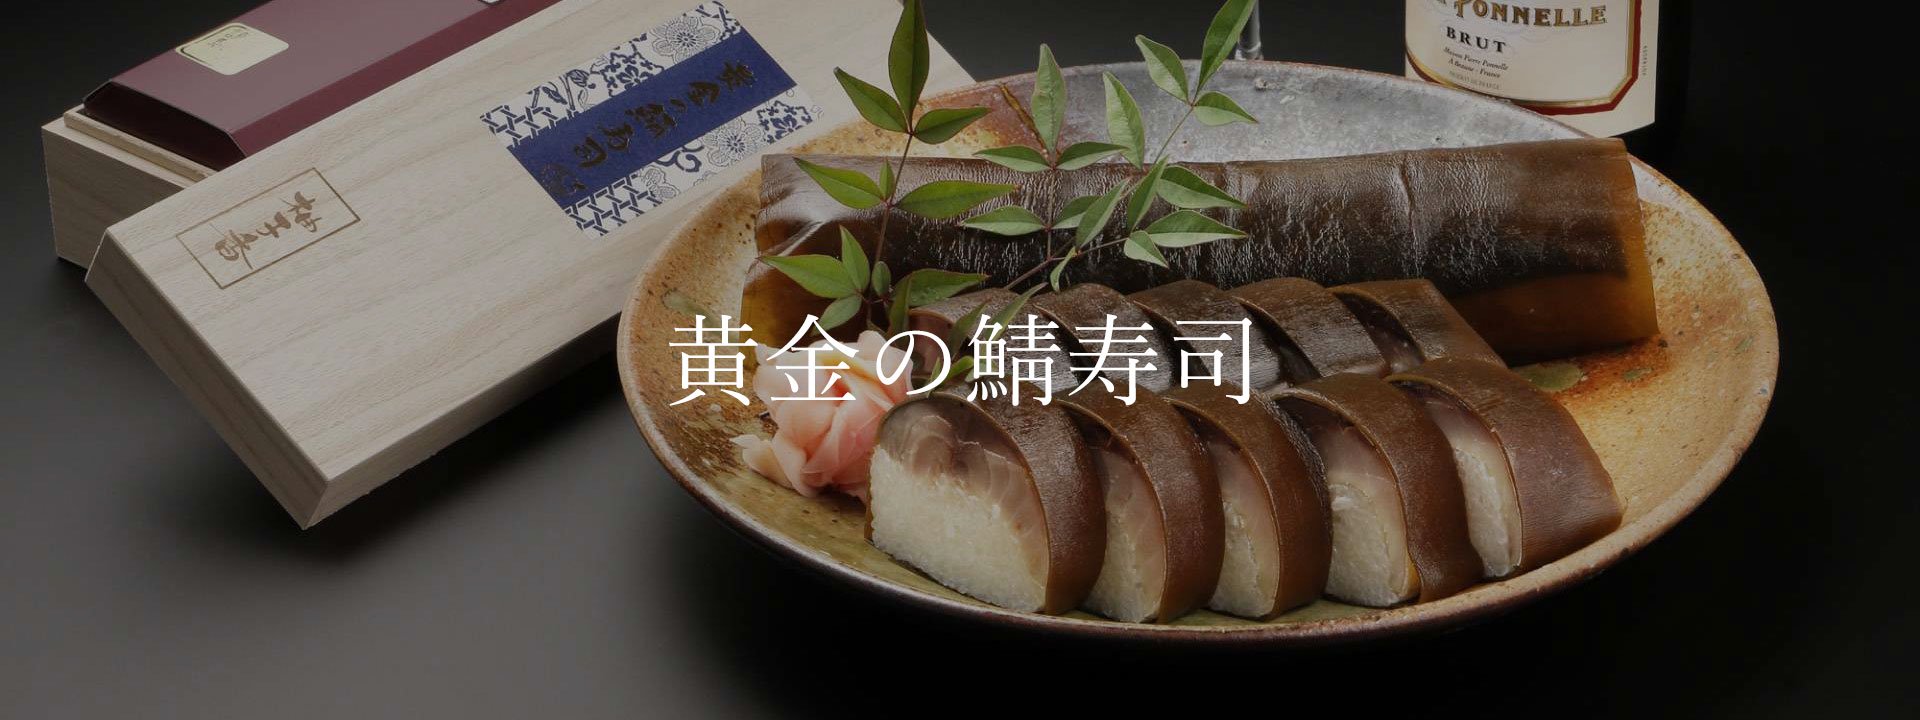 黄金の鯖寿司の説明画像